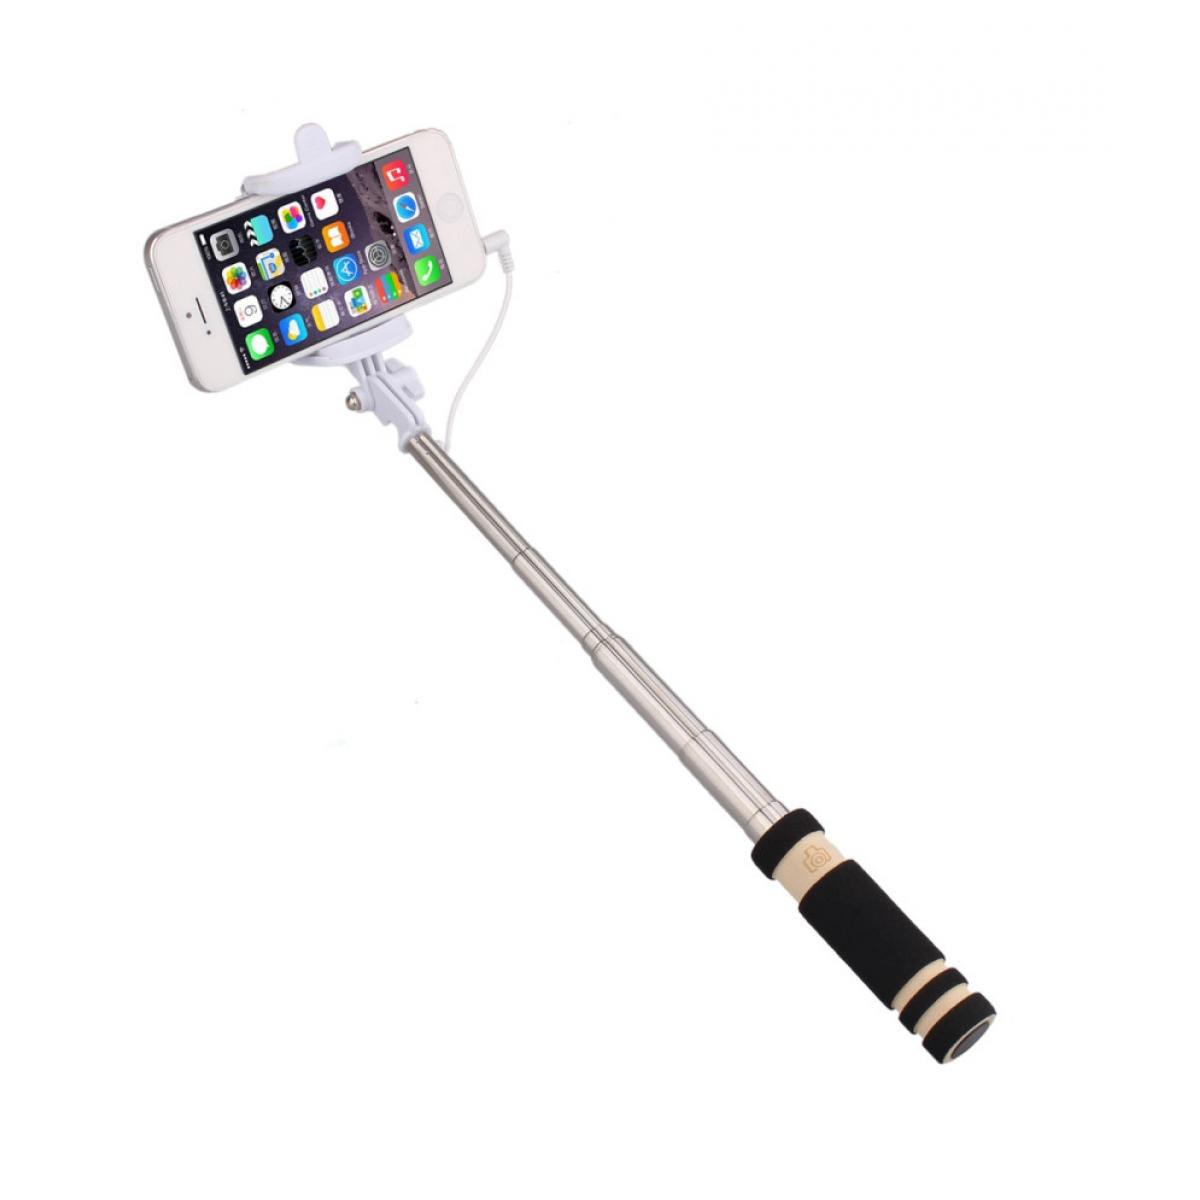 Shot - Mini Perche Selfie pour SAMSUNG Galaxy J4+ Smartphone avec Cable Jack Selfie Stick Android IOS Reglable Bouton Photo (NOIR) - Autres accessoires smartphone